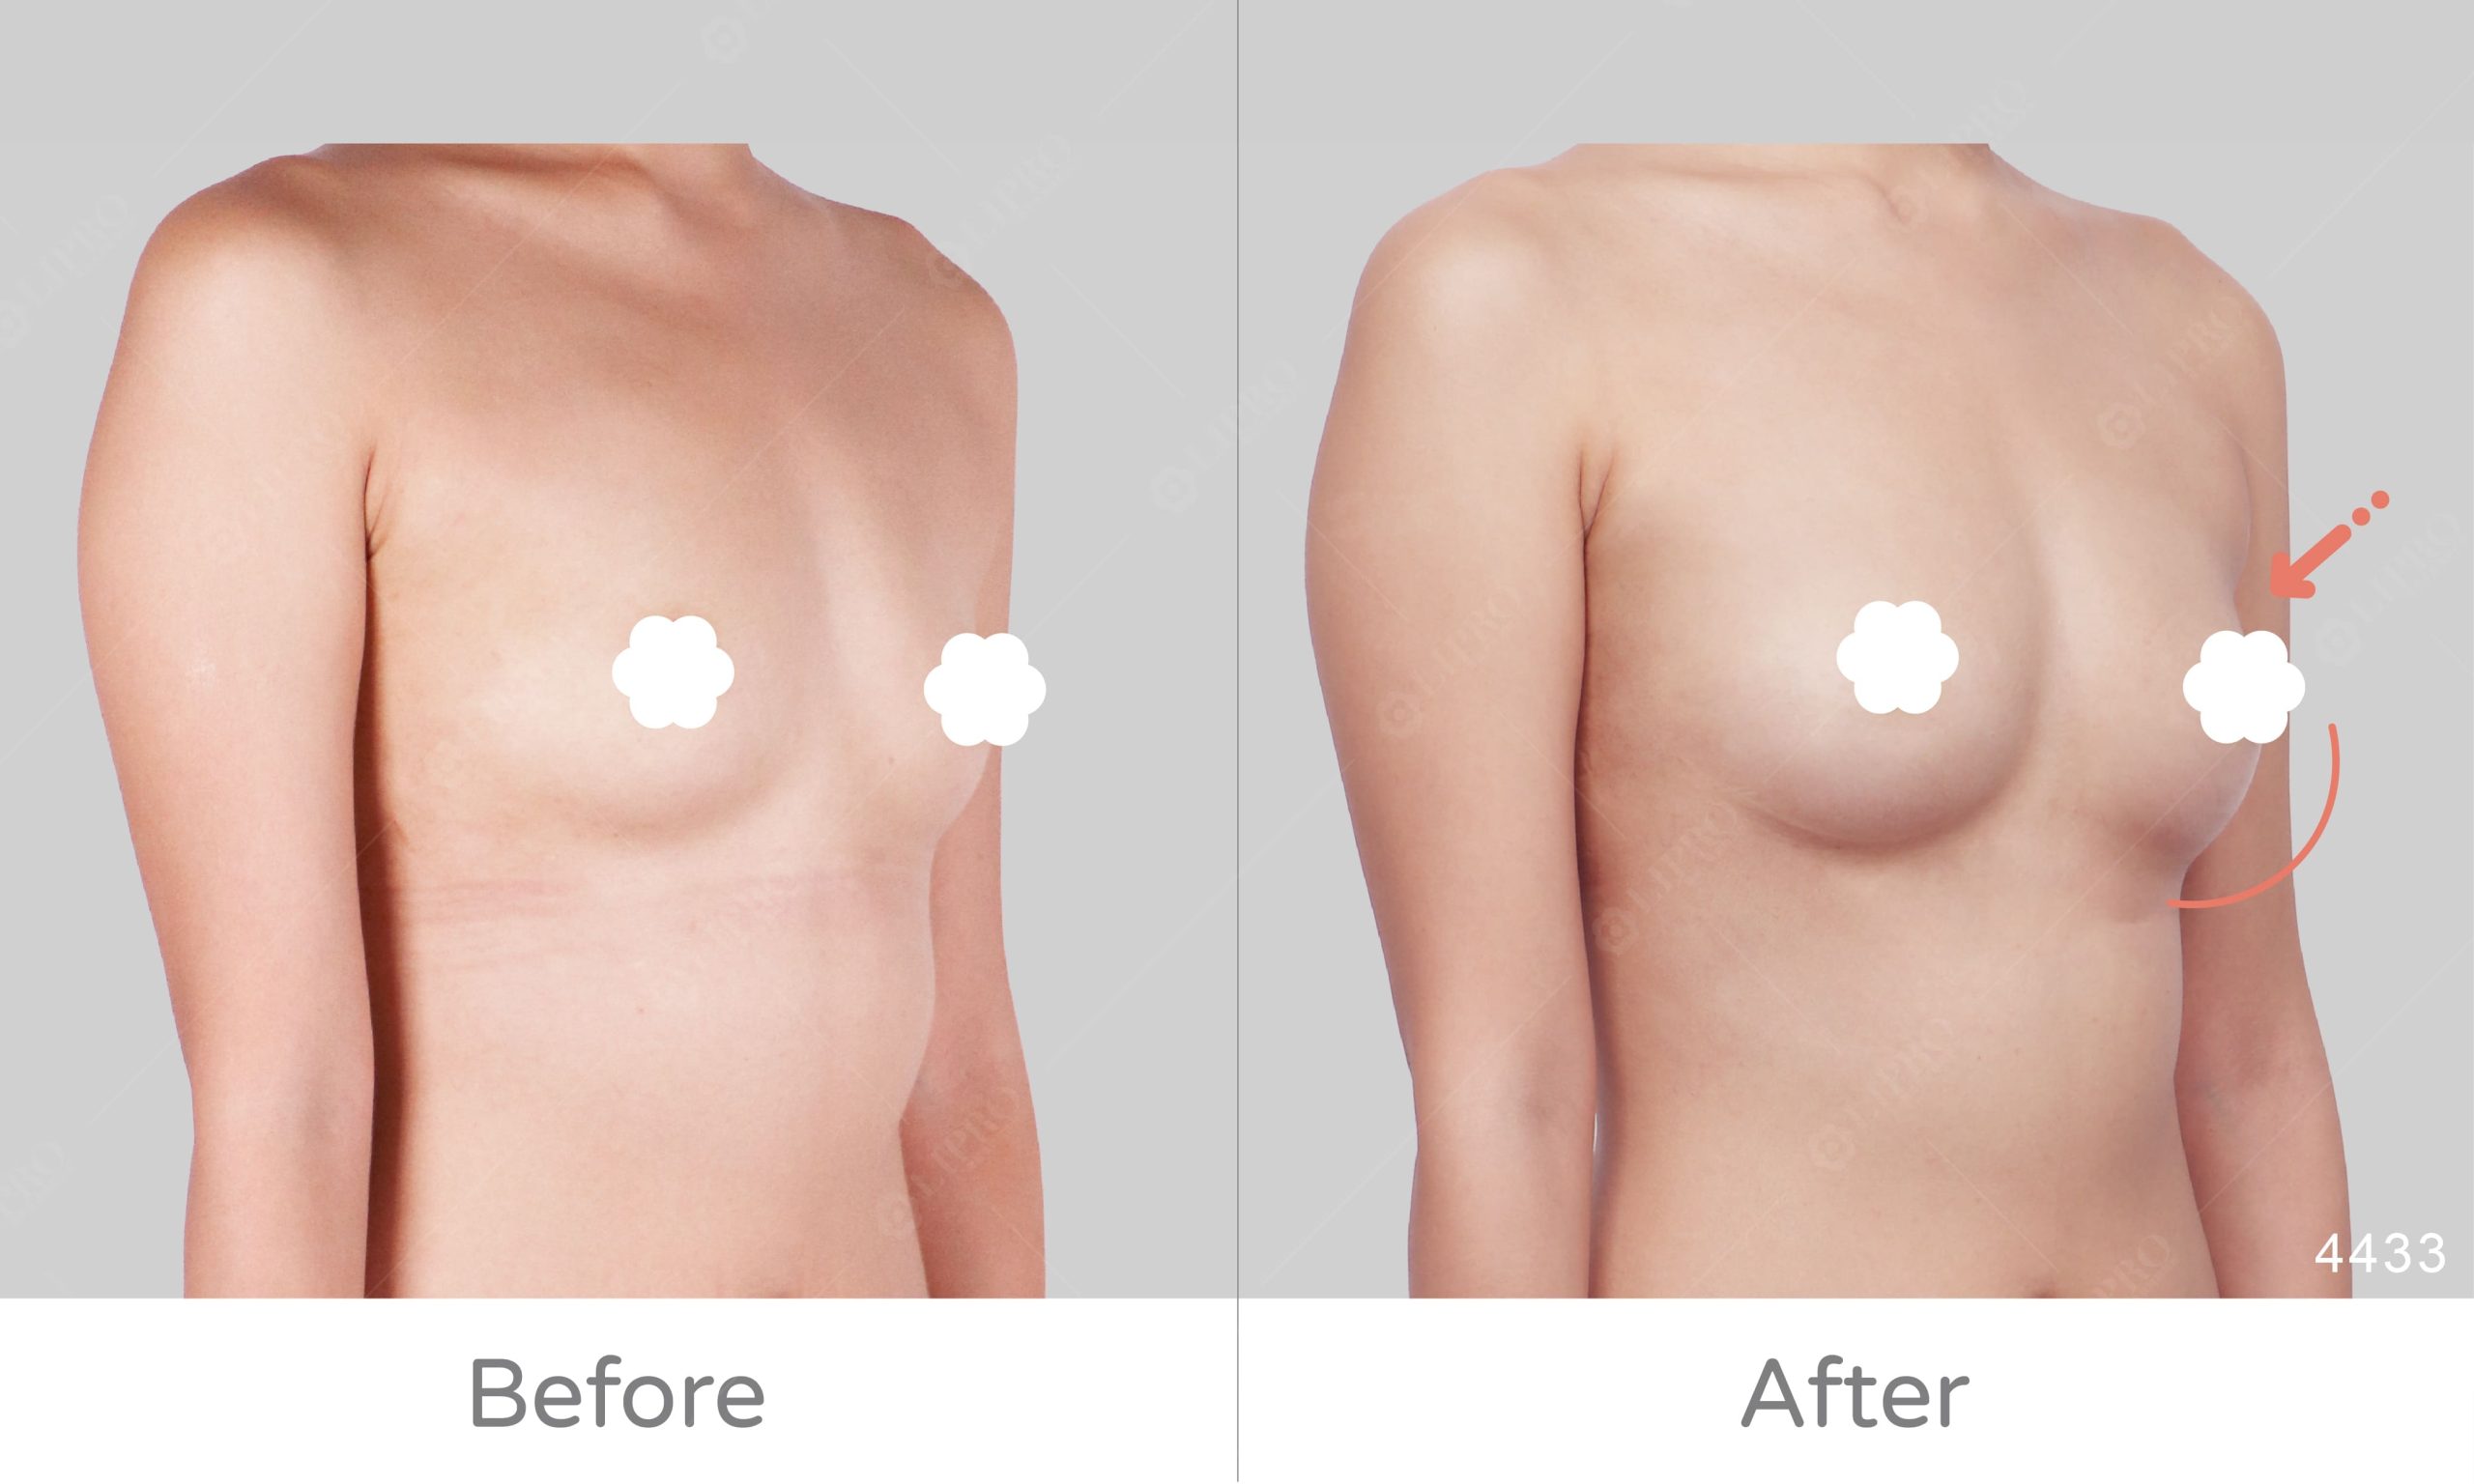 A罩杯自體脂肪豐胸案例，經麗波永康豐胸手術協助，成功擁有美麗胸型